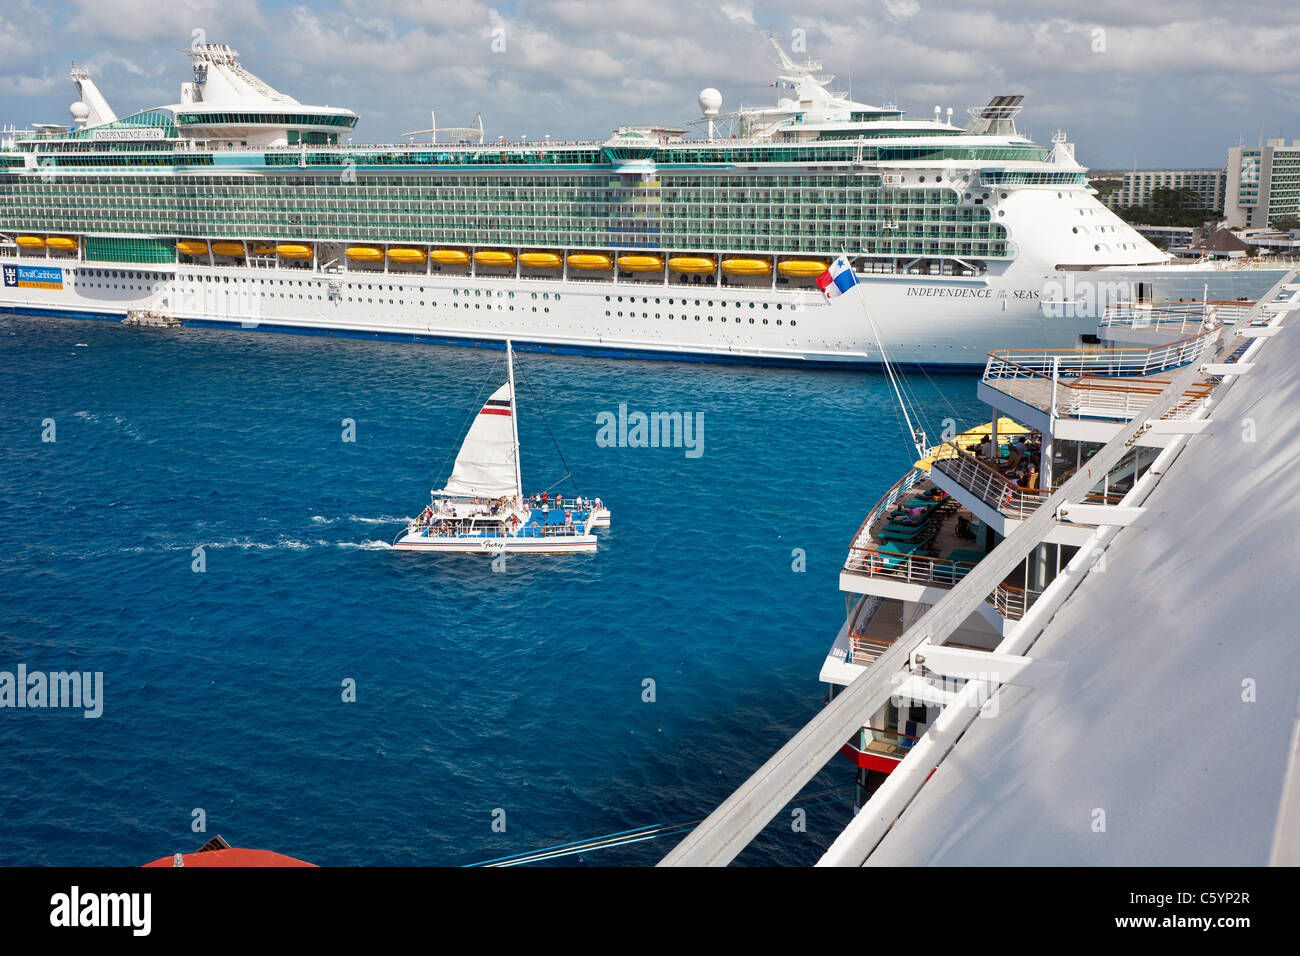 Excursion de croisière catamaran à voile renvoie les passagers à quai dans la mer des Caraïbes au large de Cozumel, Mexique Banque D'Images